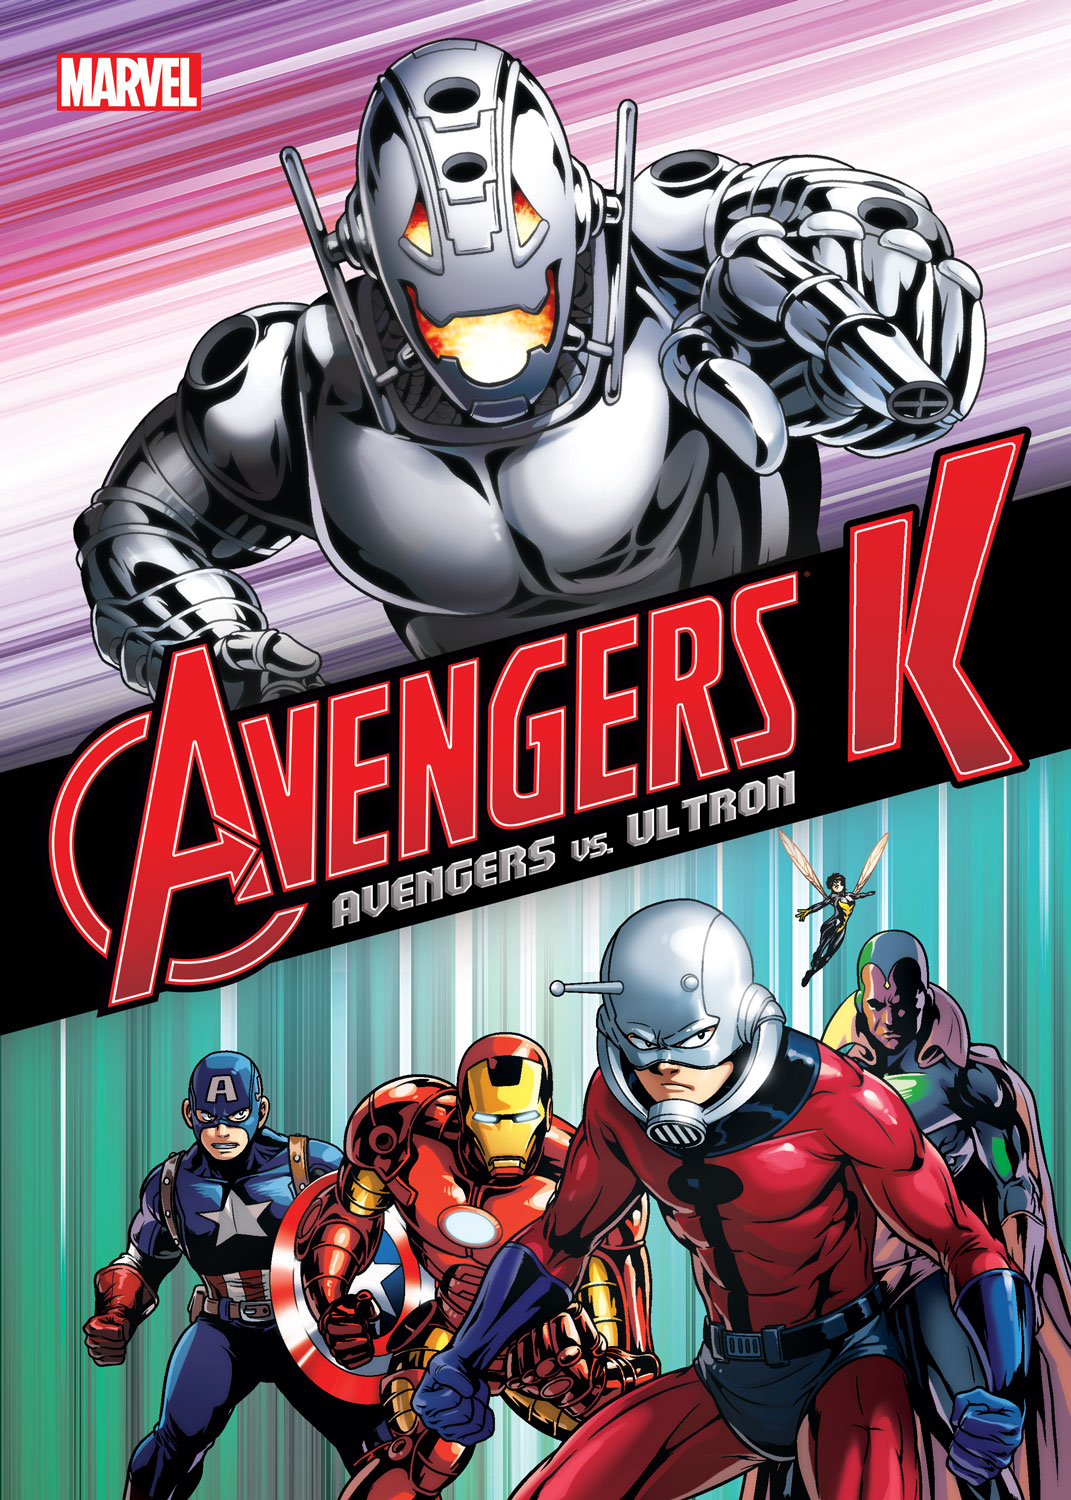 Avengers_K_Book_1_Cover